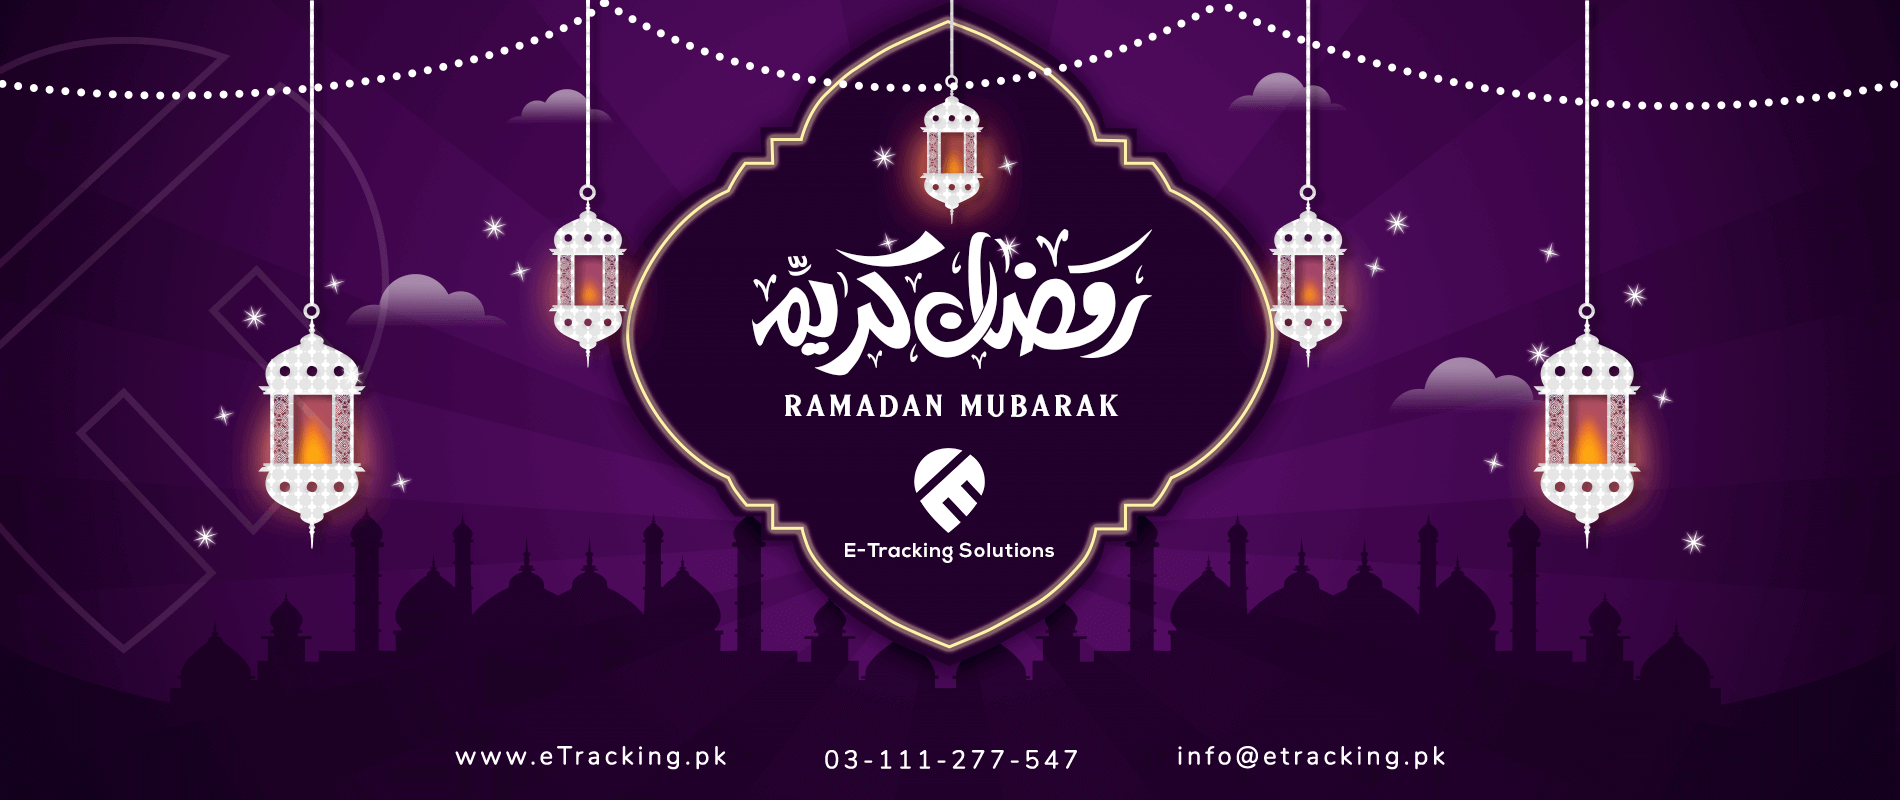 wishing ramadan mubarak